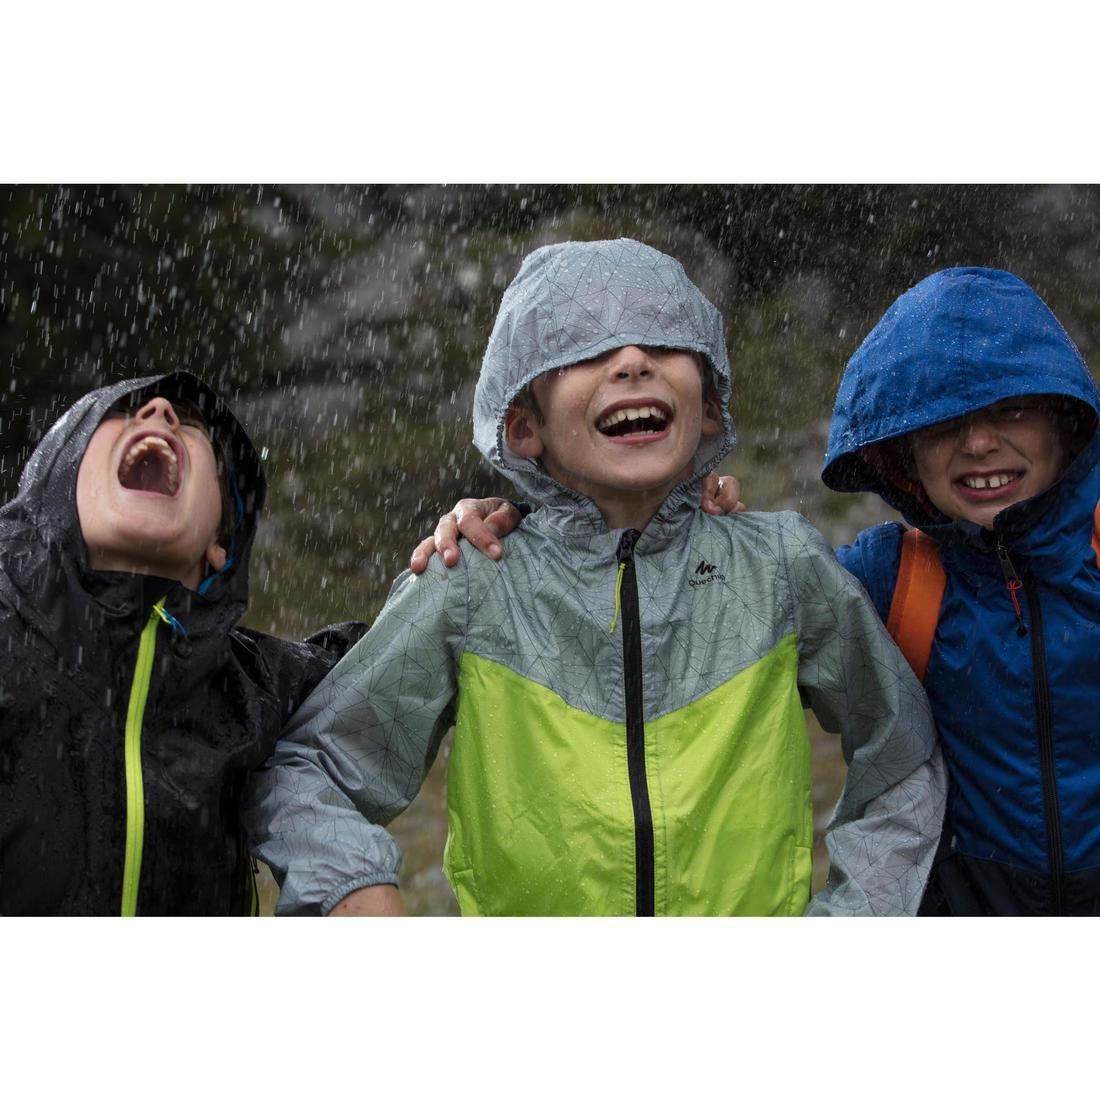 QUECHUA - Kids' Waterproof Hiking Jacket - 7-15Y, Navy Blue